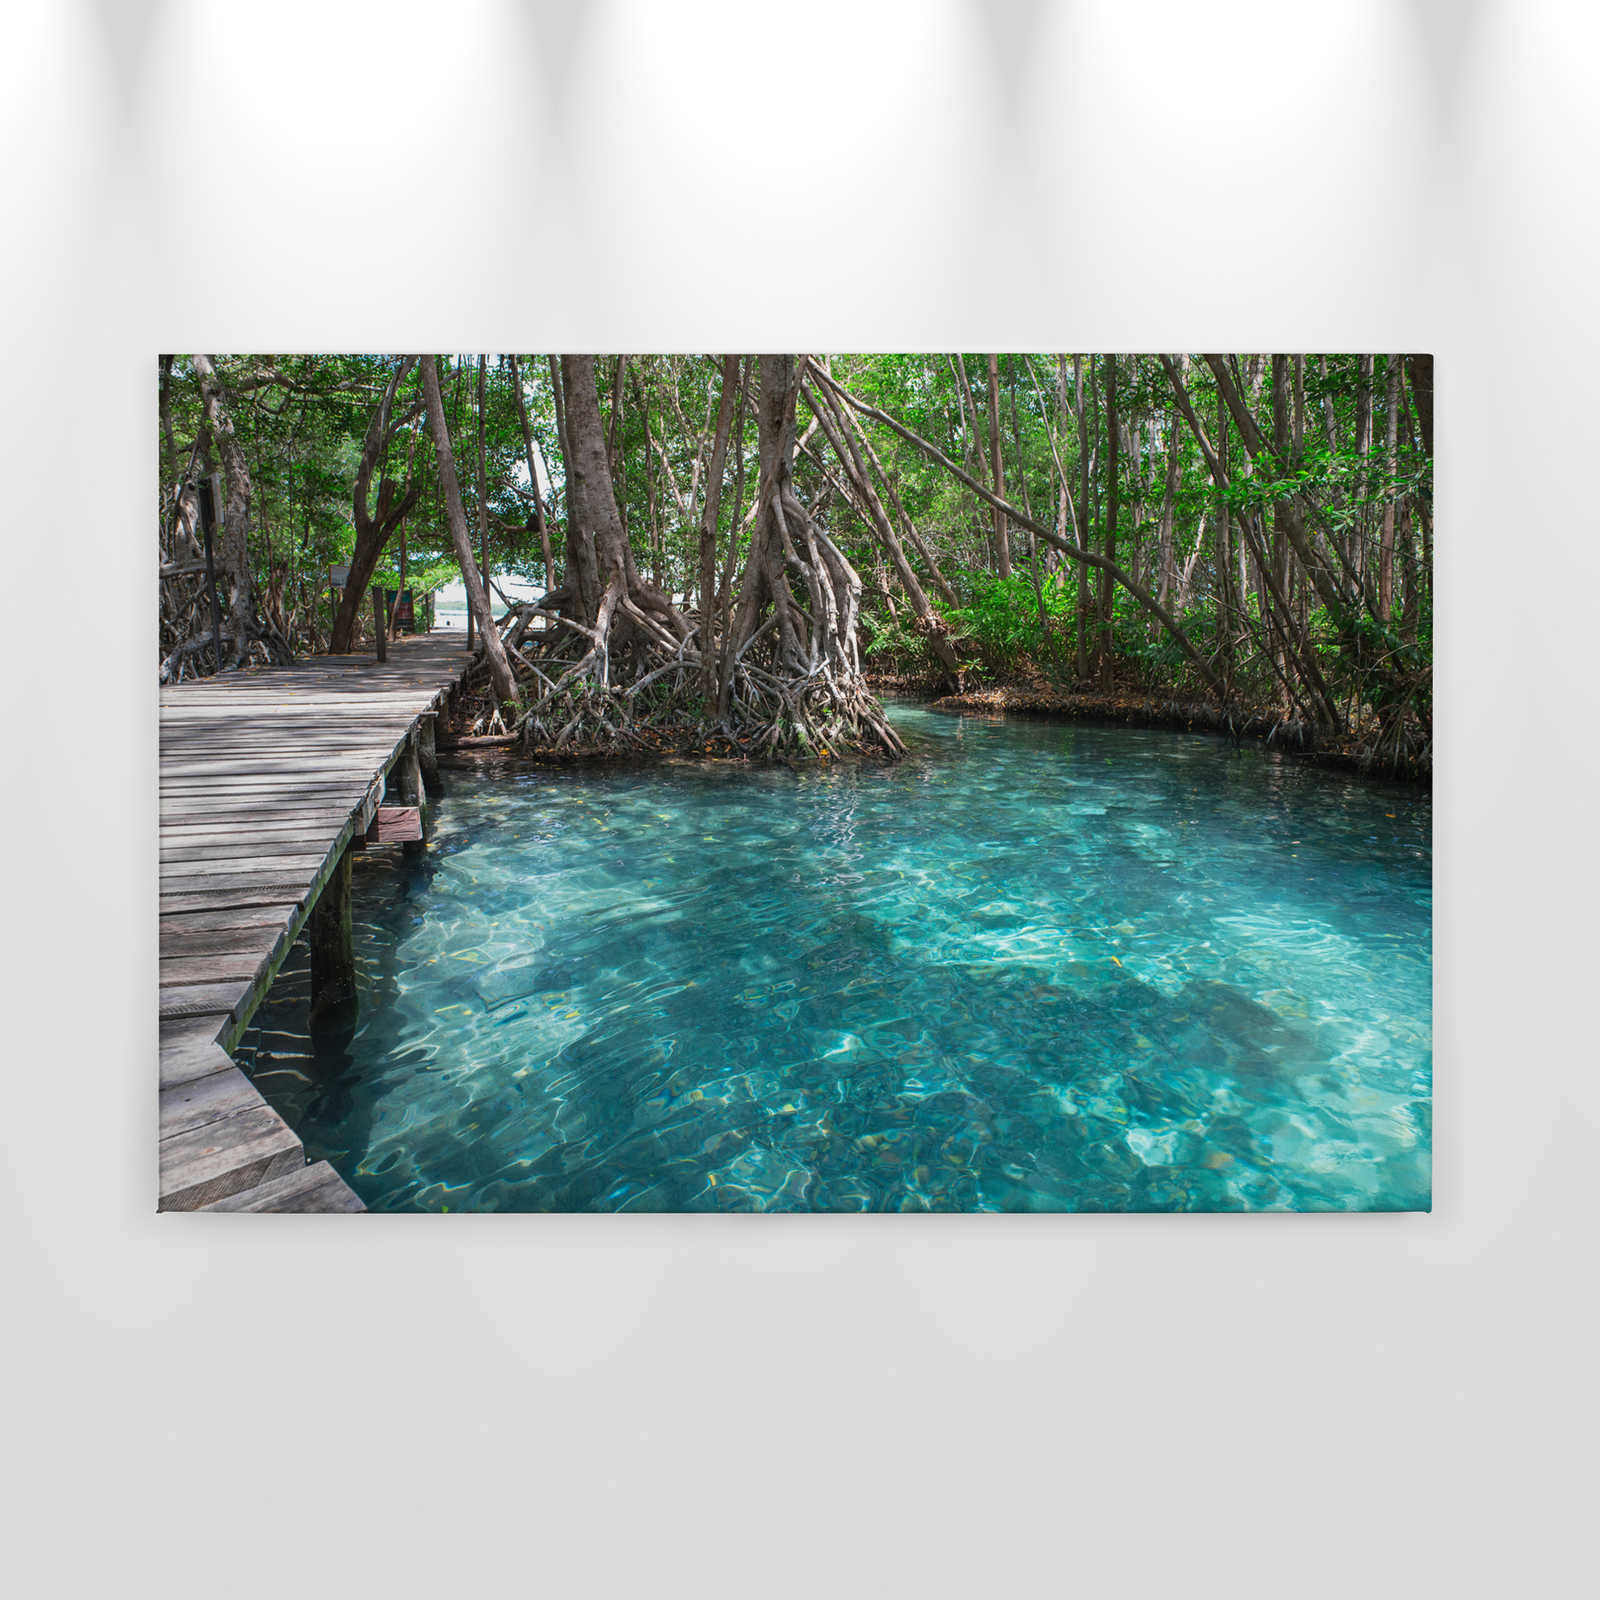             Canvas met houten pad over een meer in de jungle - 0,90 m x 0,60 m
        